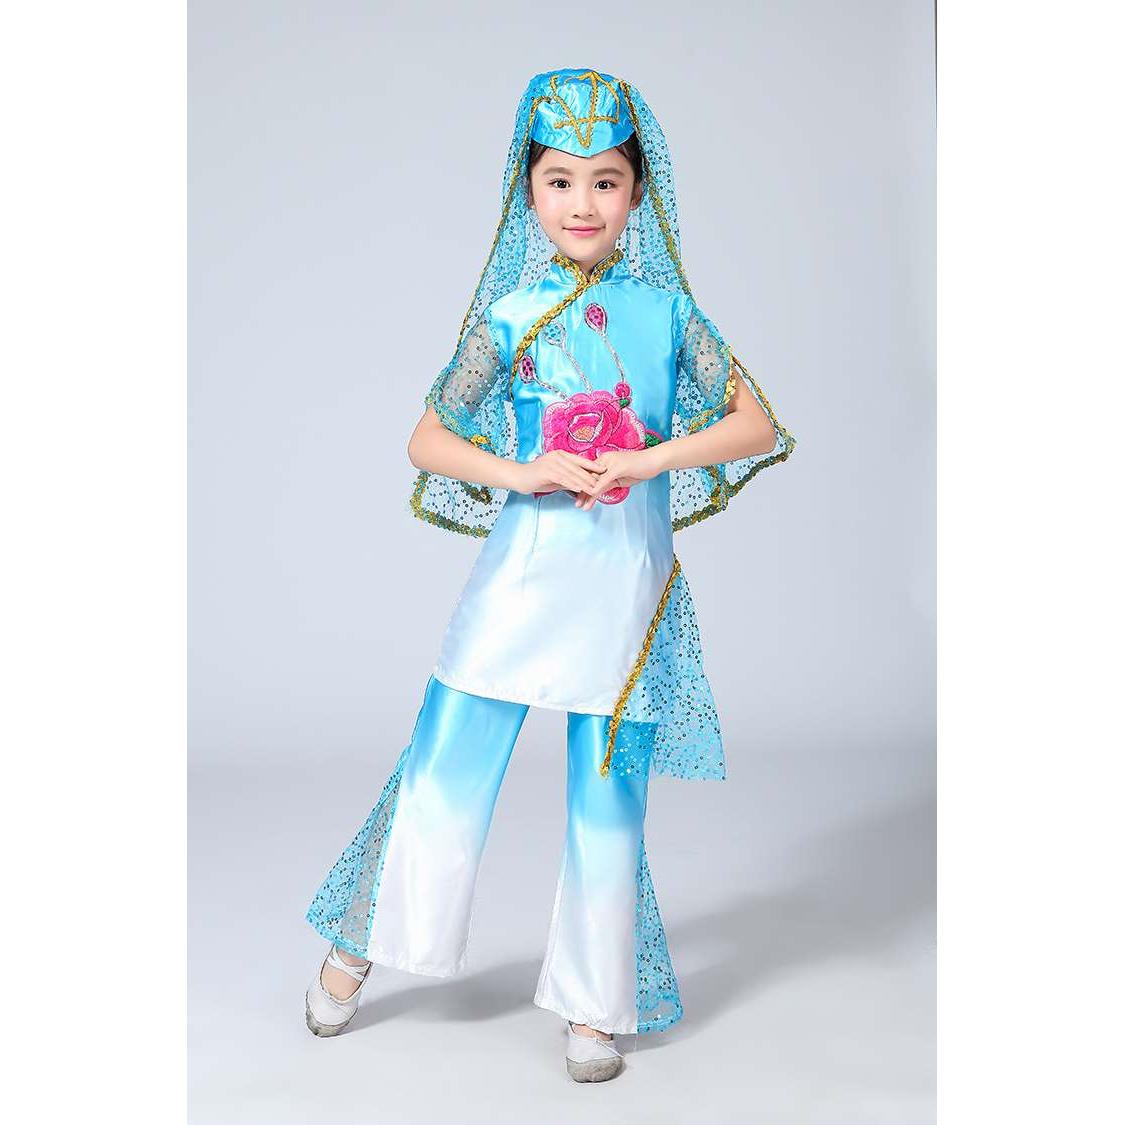 正品儿童回族演出服新疆舞少儿女童少维族数民族维吾尔族舞蹈表演